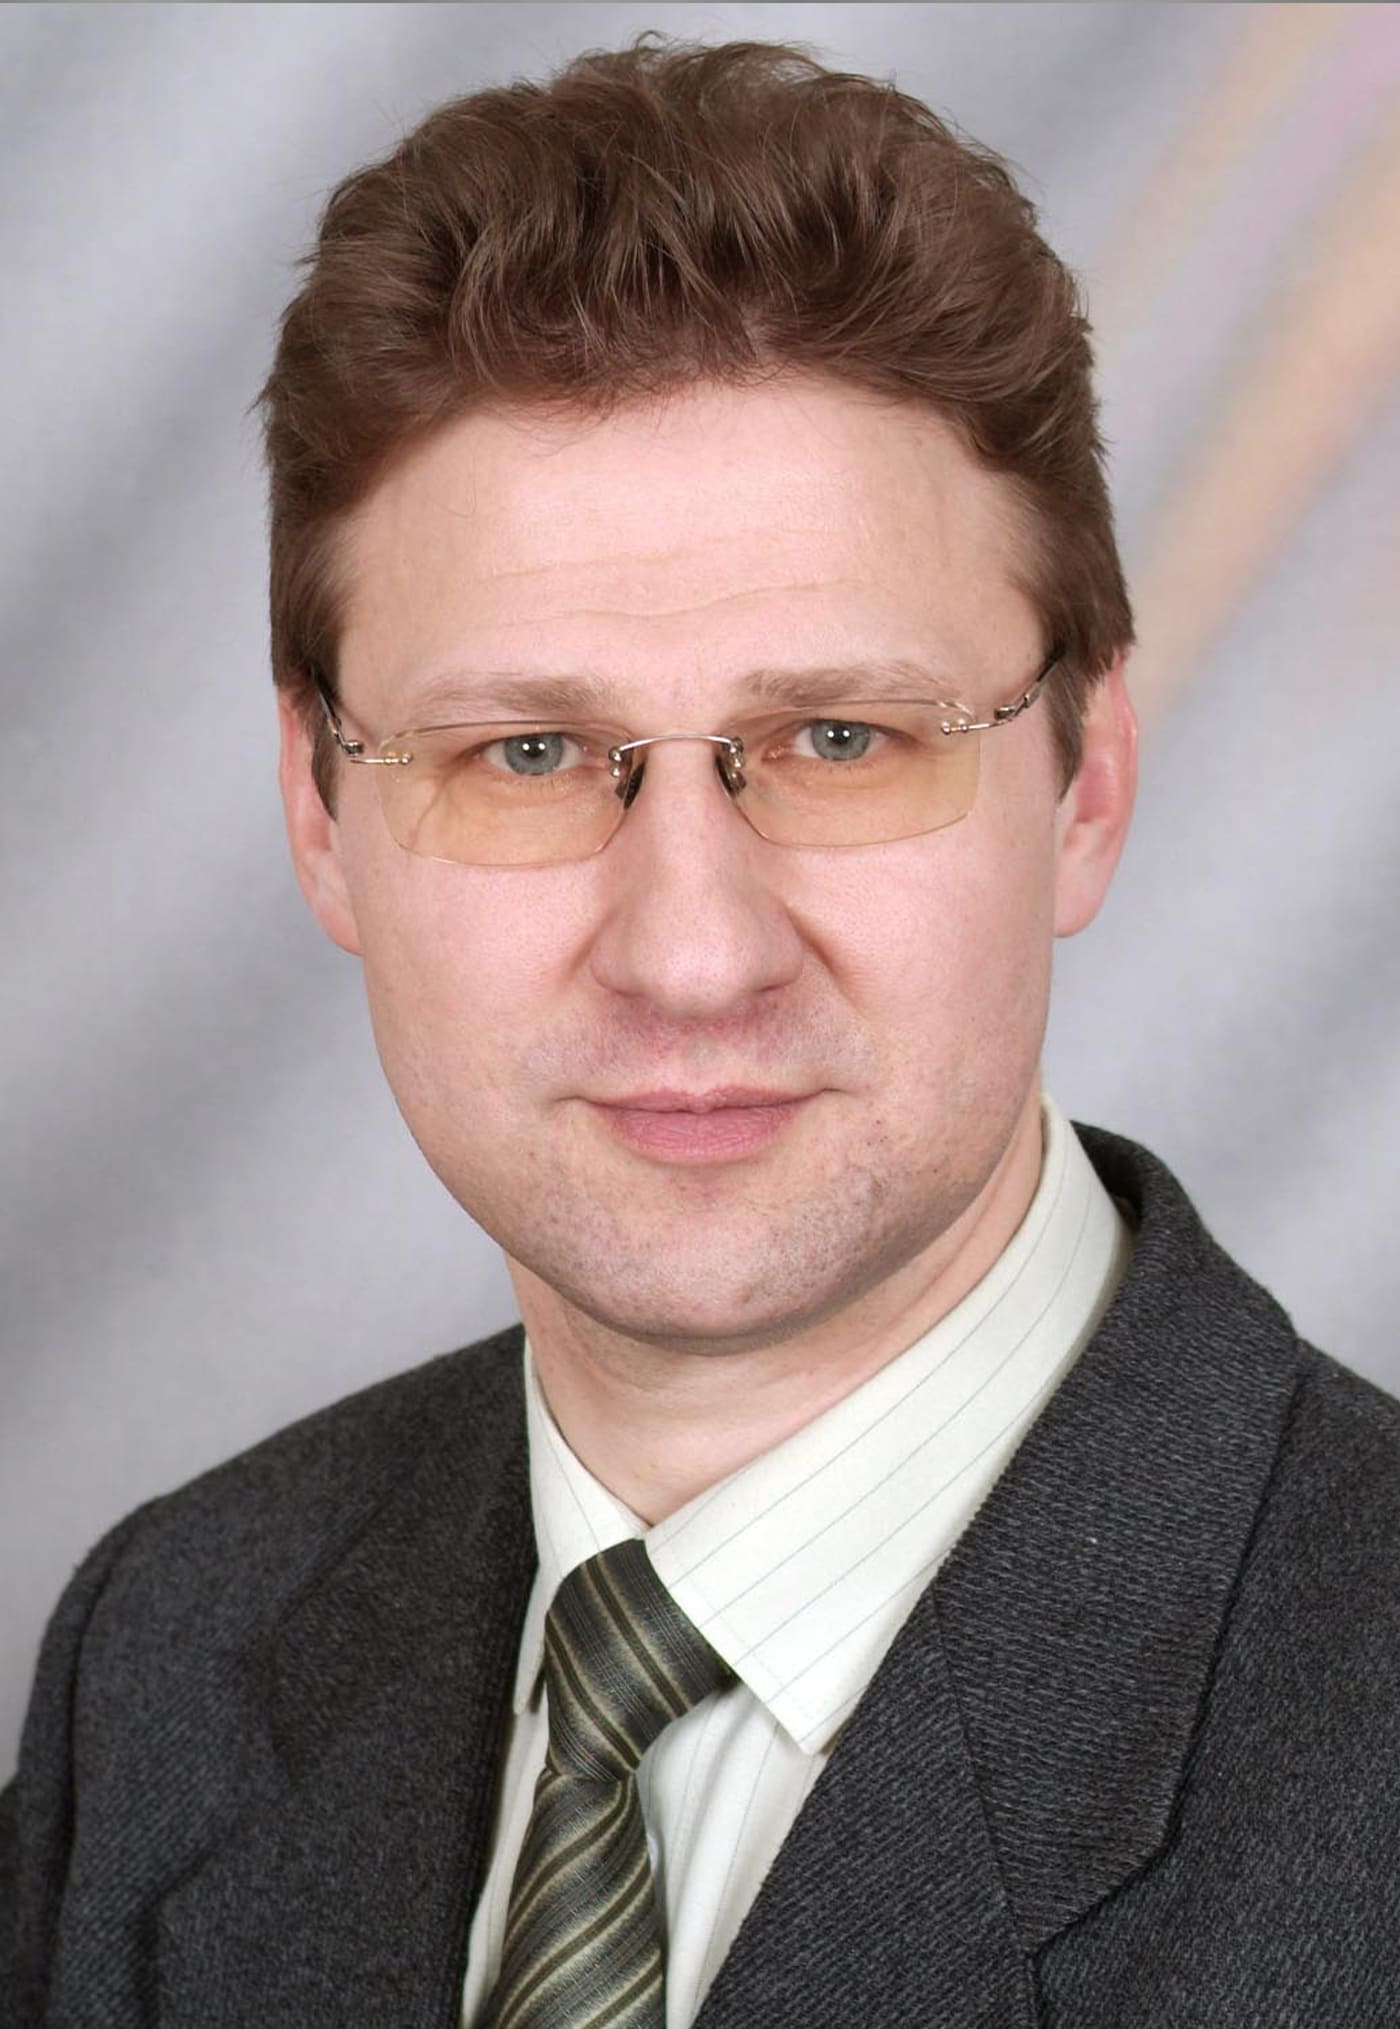 Шевченко Сергей Геннадьевич- учитель математики, brдиректор (2004-2006 гг.)